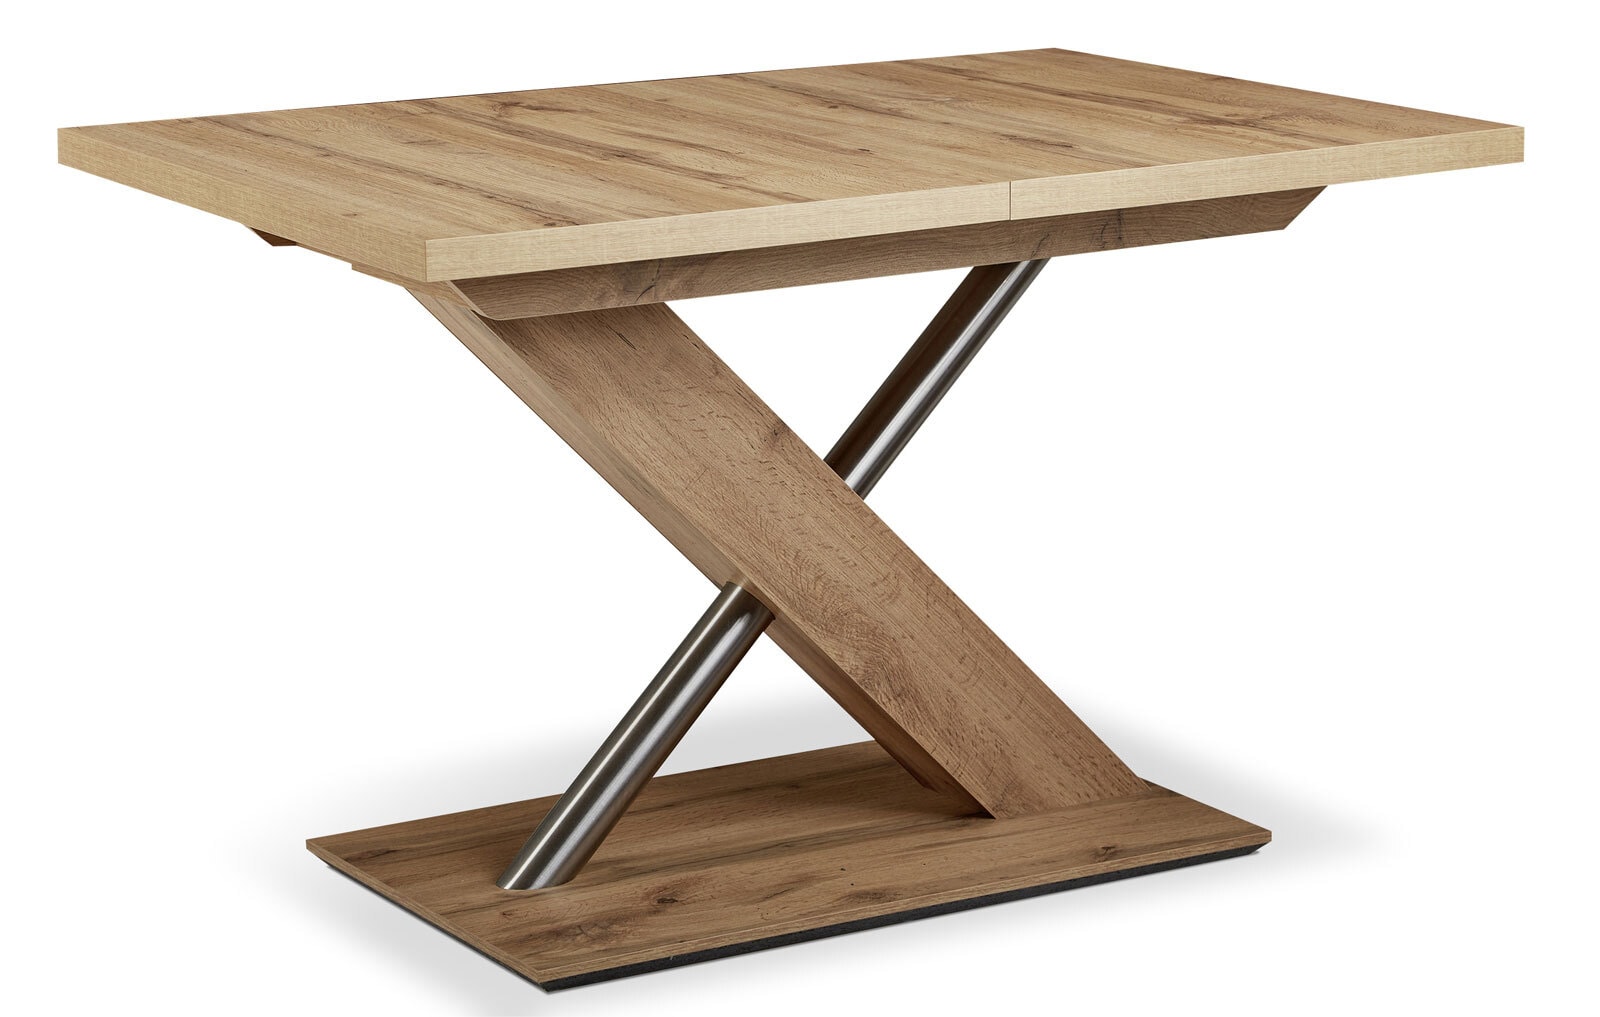 vito Eckbank ELIMO mit Tisch 110-150 x 70 cm und 2 Stühle